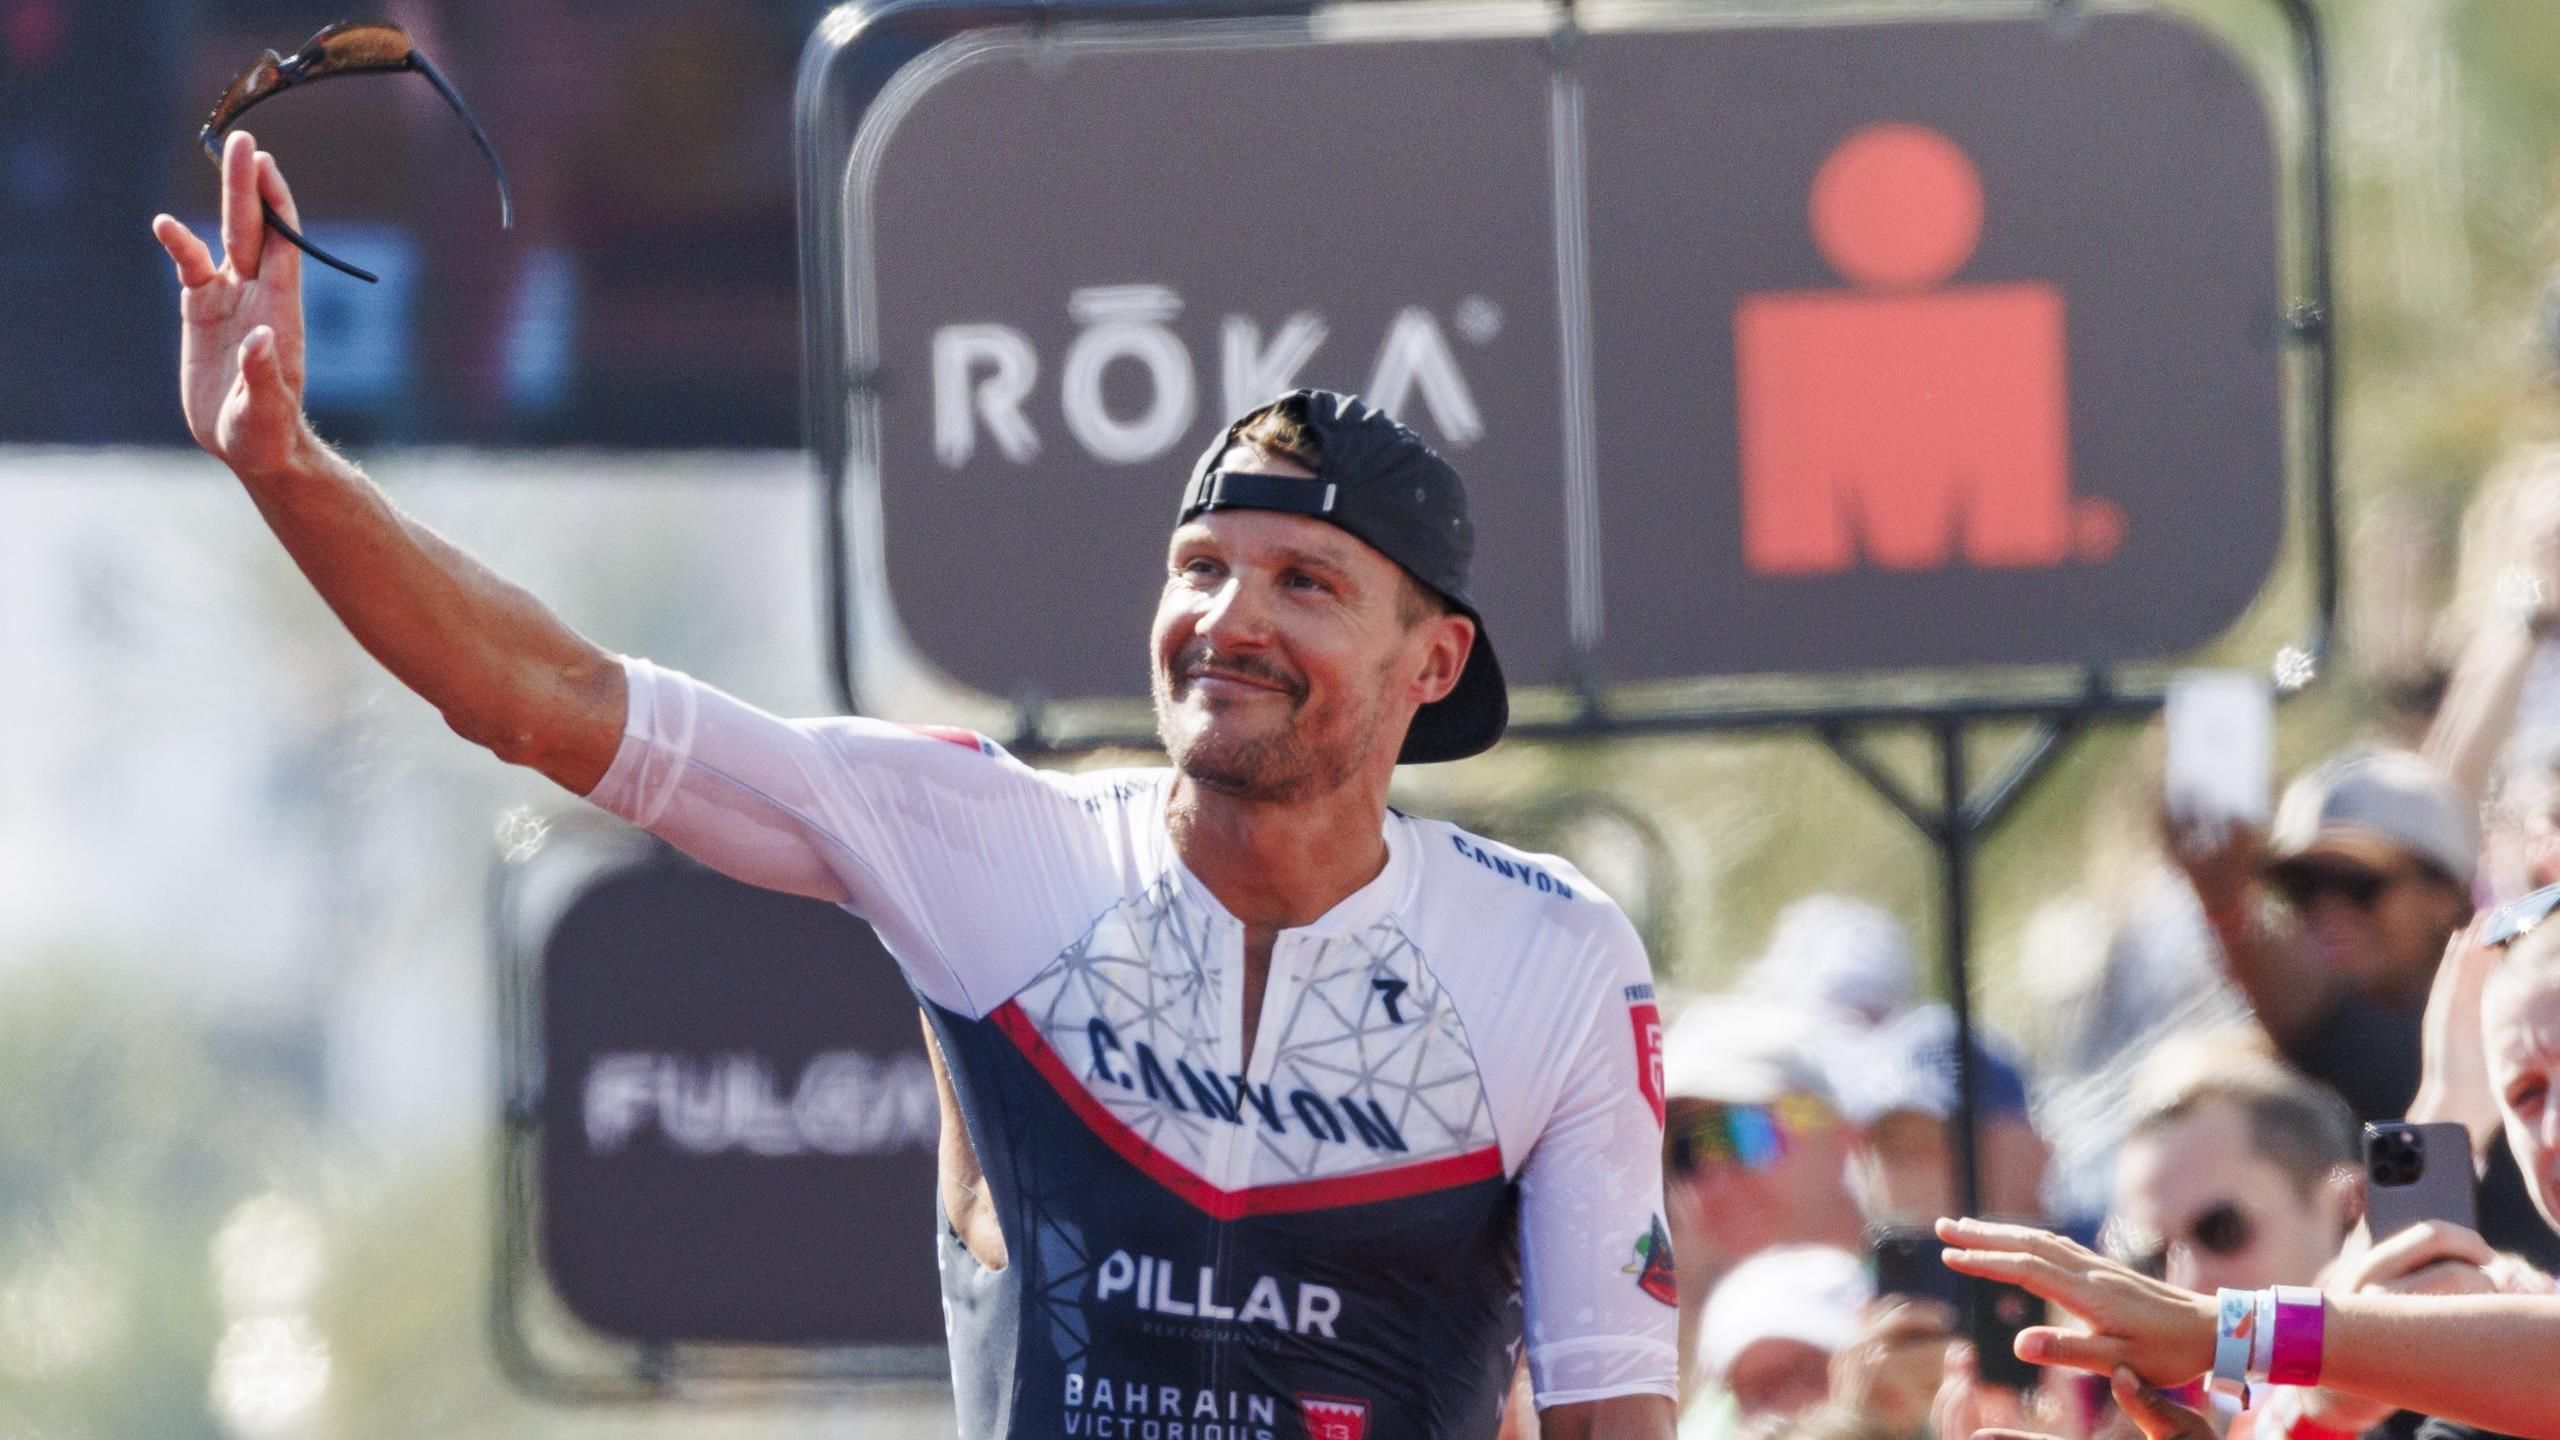 Jan Frodeno zum Karriereende abgeschlagen, Patrick Lange gewinnt WM-Silber bei Ironman in Nizza